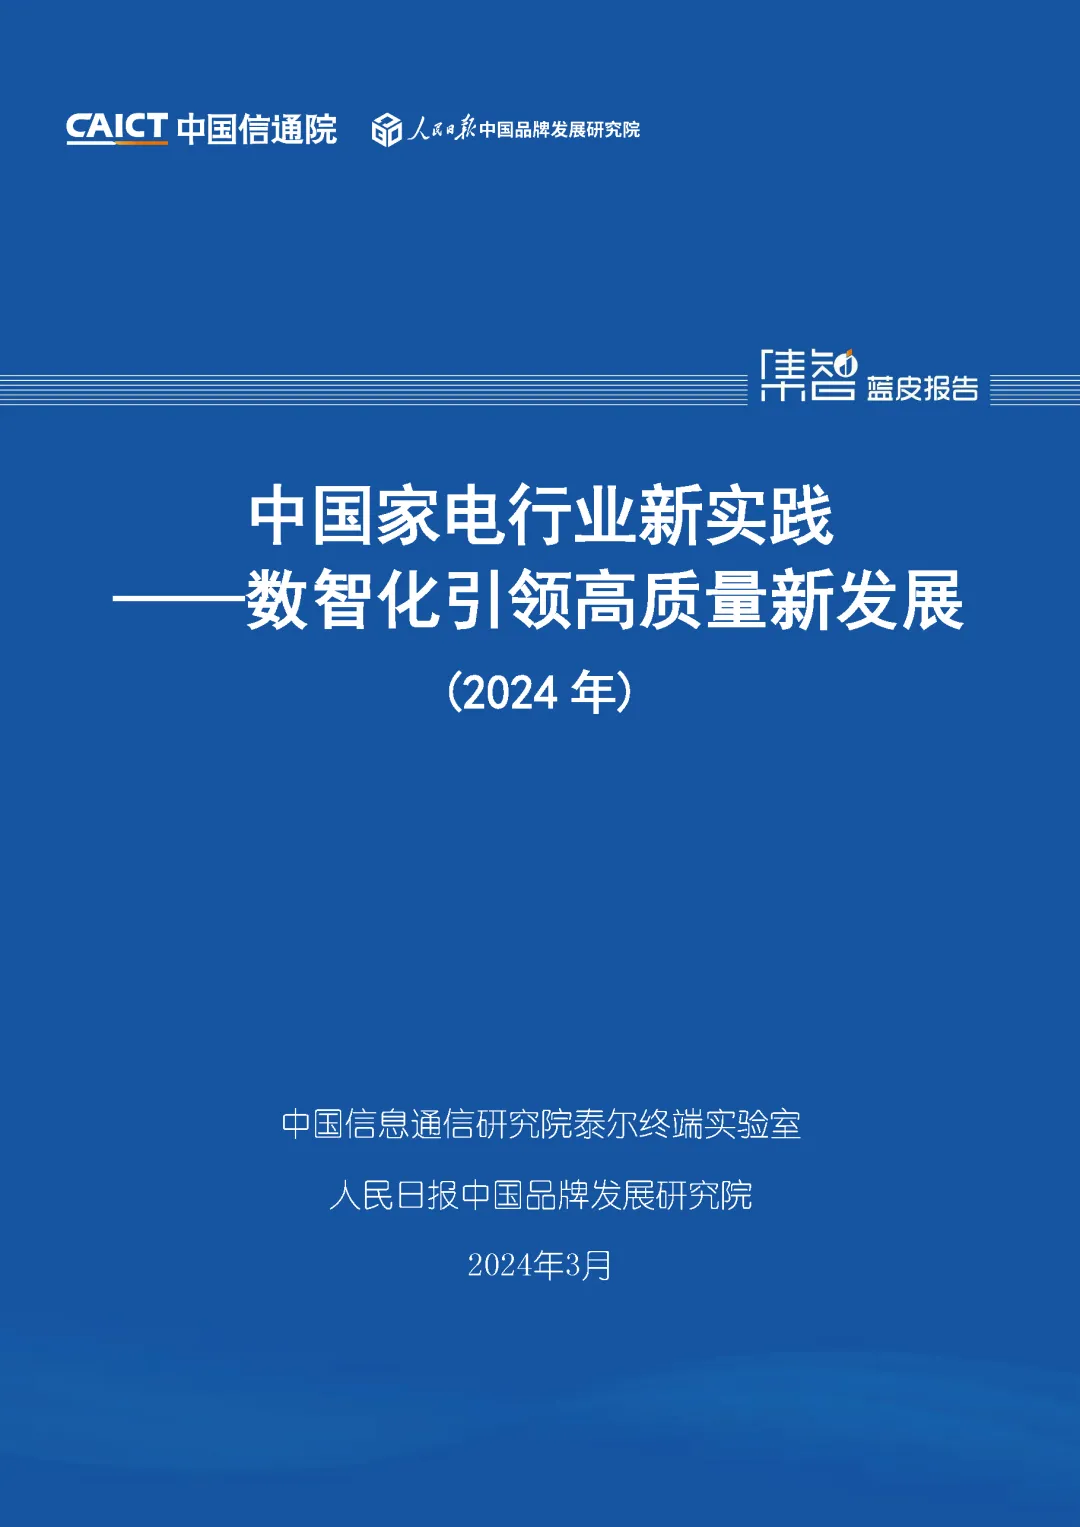 中国信通院联合发布《中国家电行业新实践——数智化引领高质量新发展（2024年）》